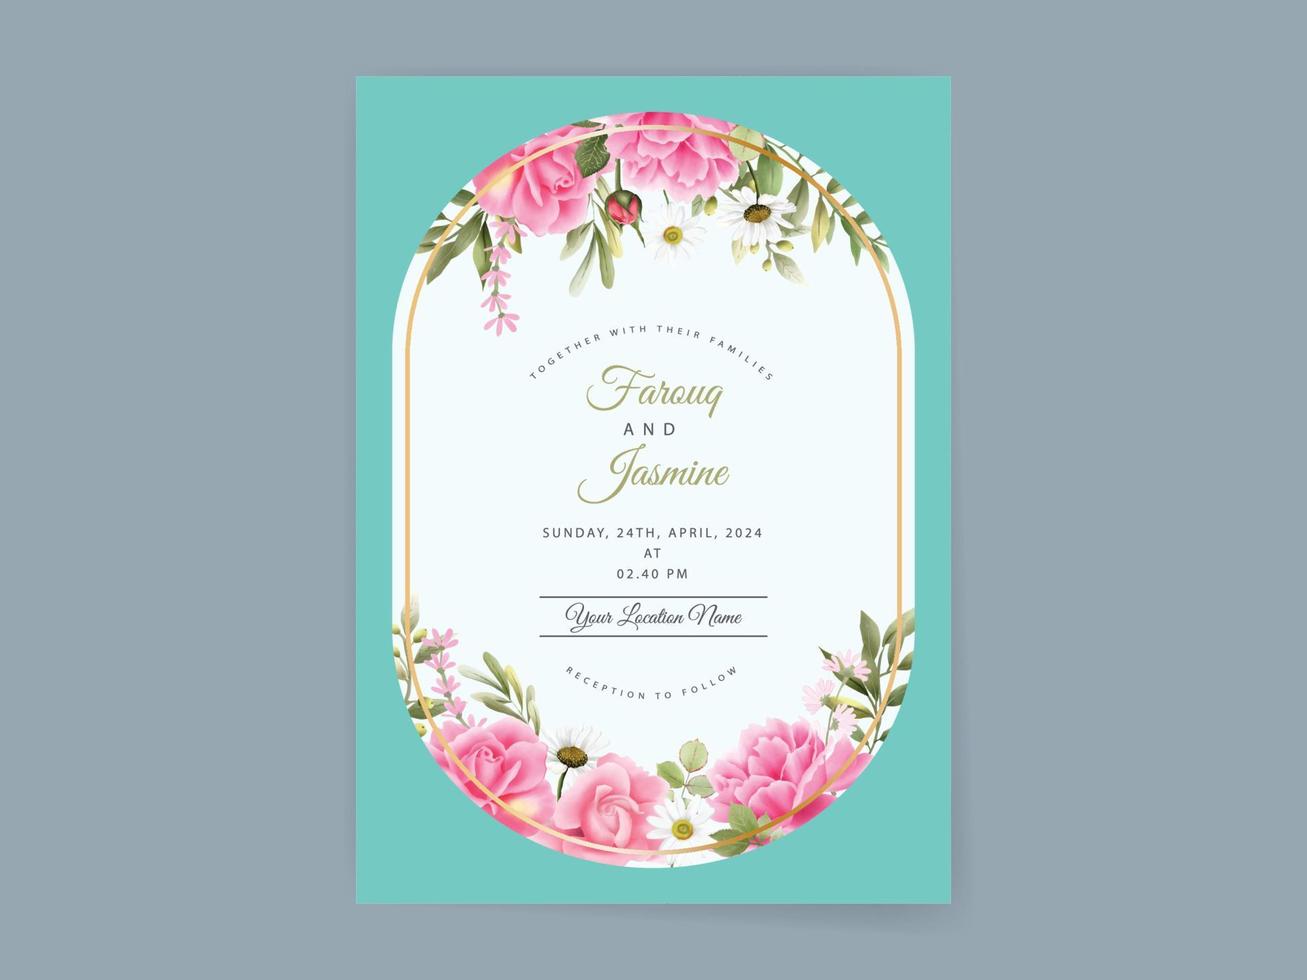 modelo de cartão de convite de casamento floral elegante vetor